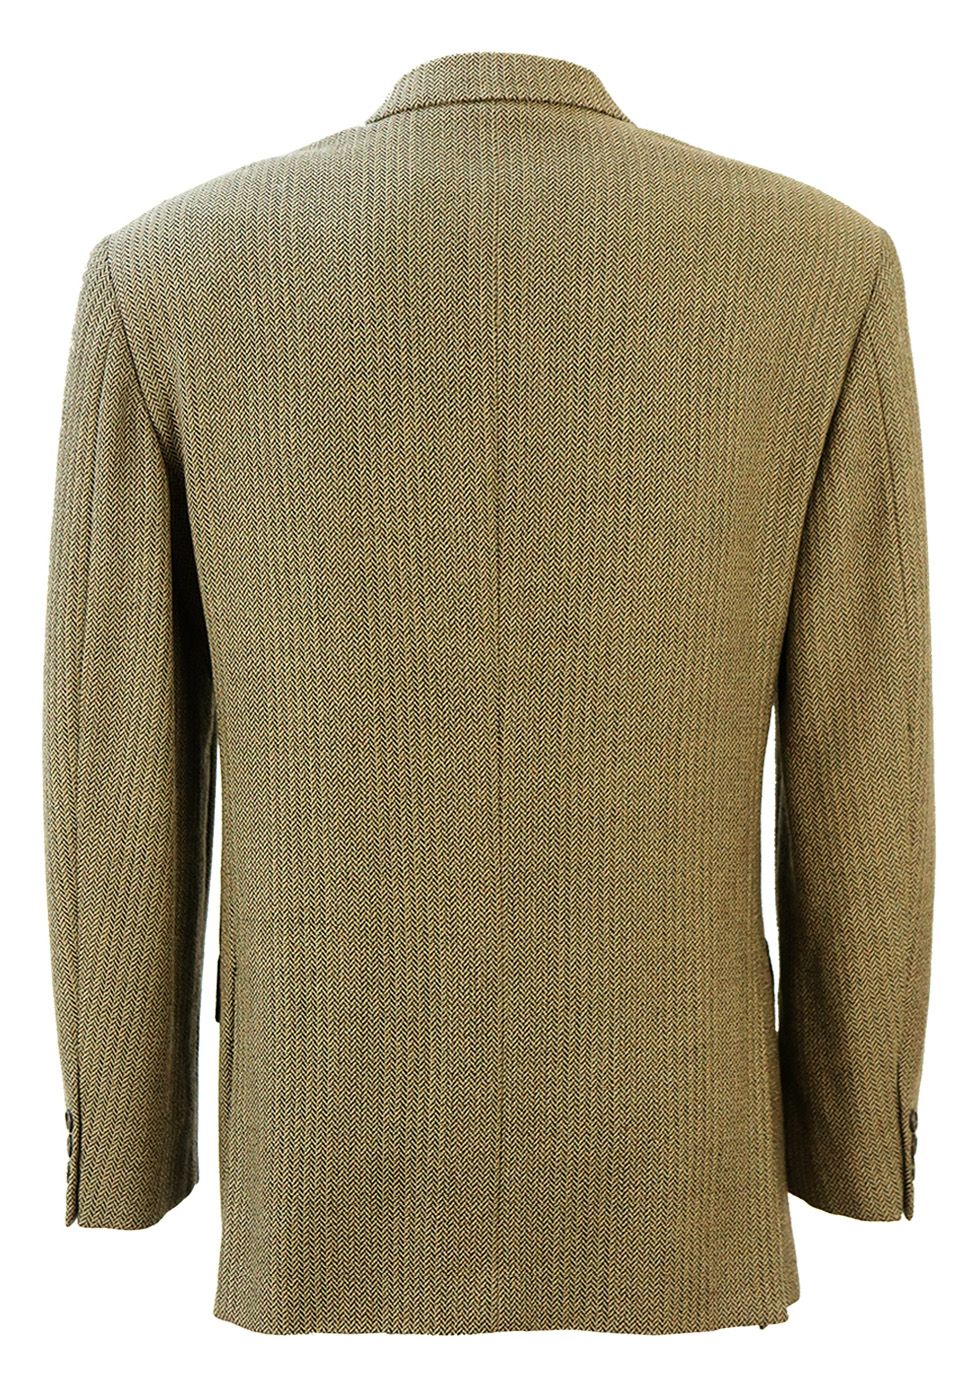 Pure Wool Camel & Brown Herringbone Tweed 3 Button Blazer Jacket - M ...